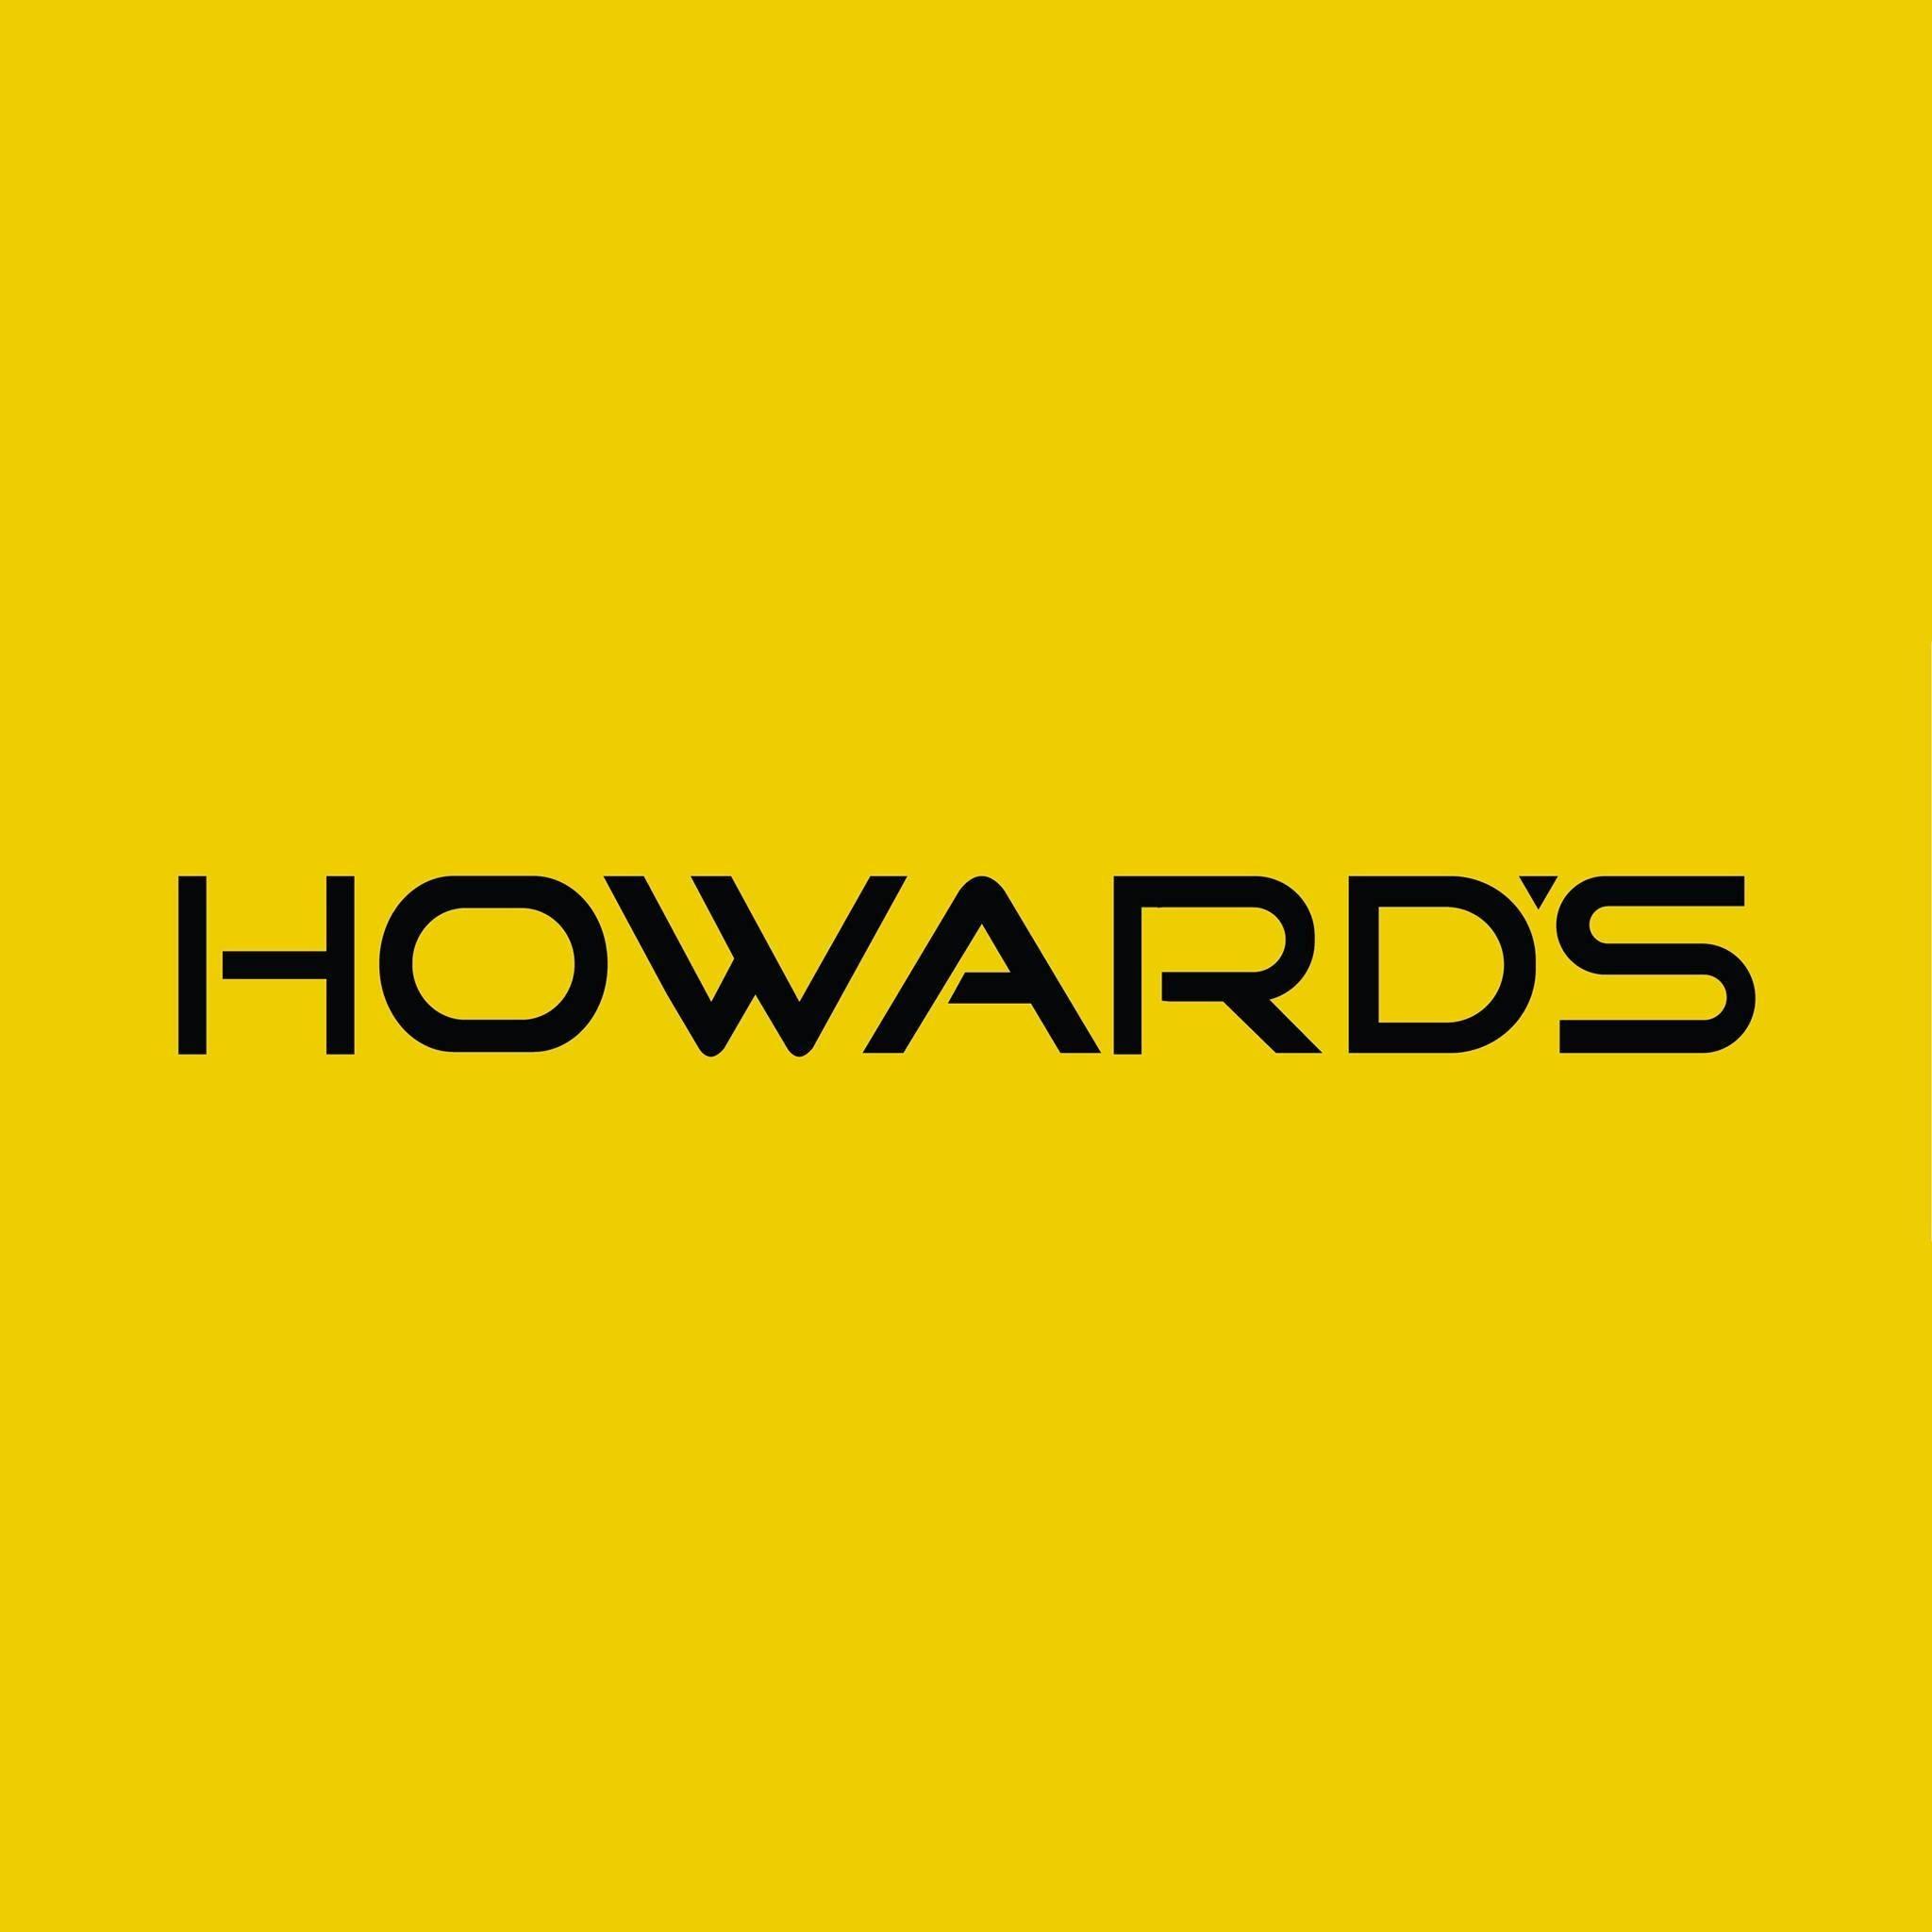 Howard's Appliance TV & Mattress